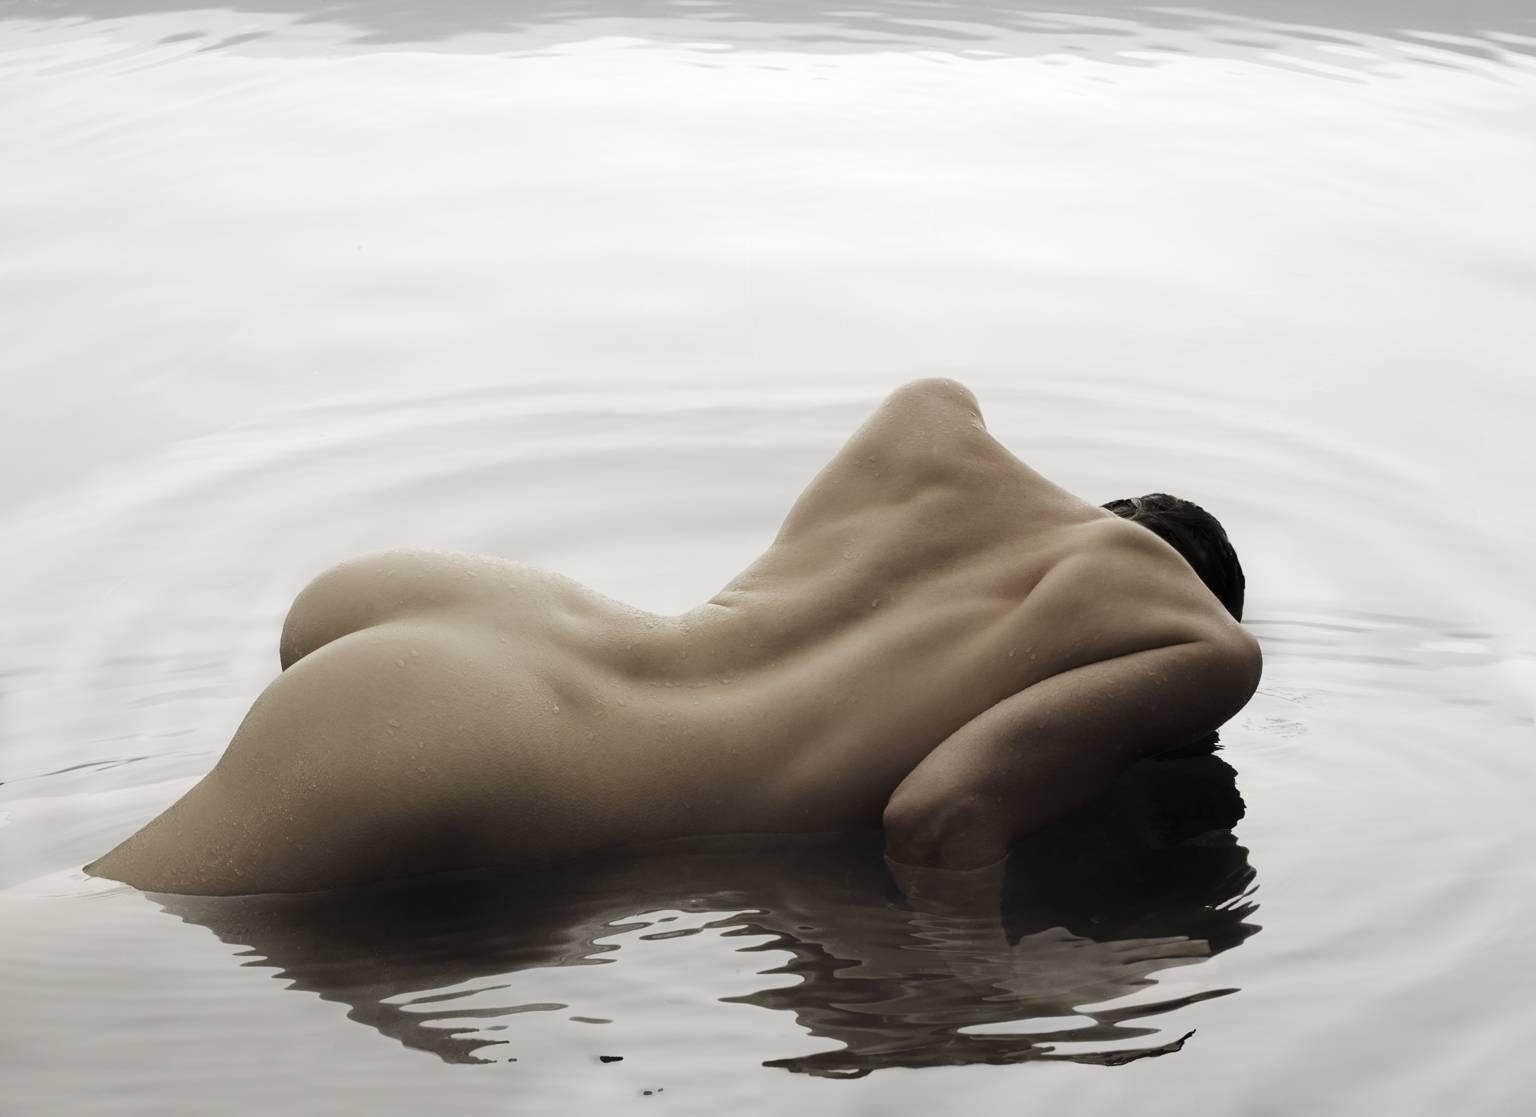 Klaus Kampert Nude Photograph - Water Creatures, 163.04.12